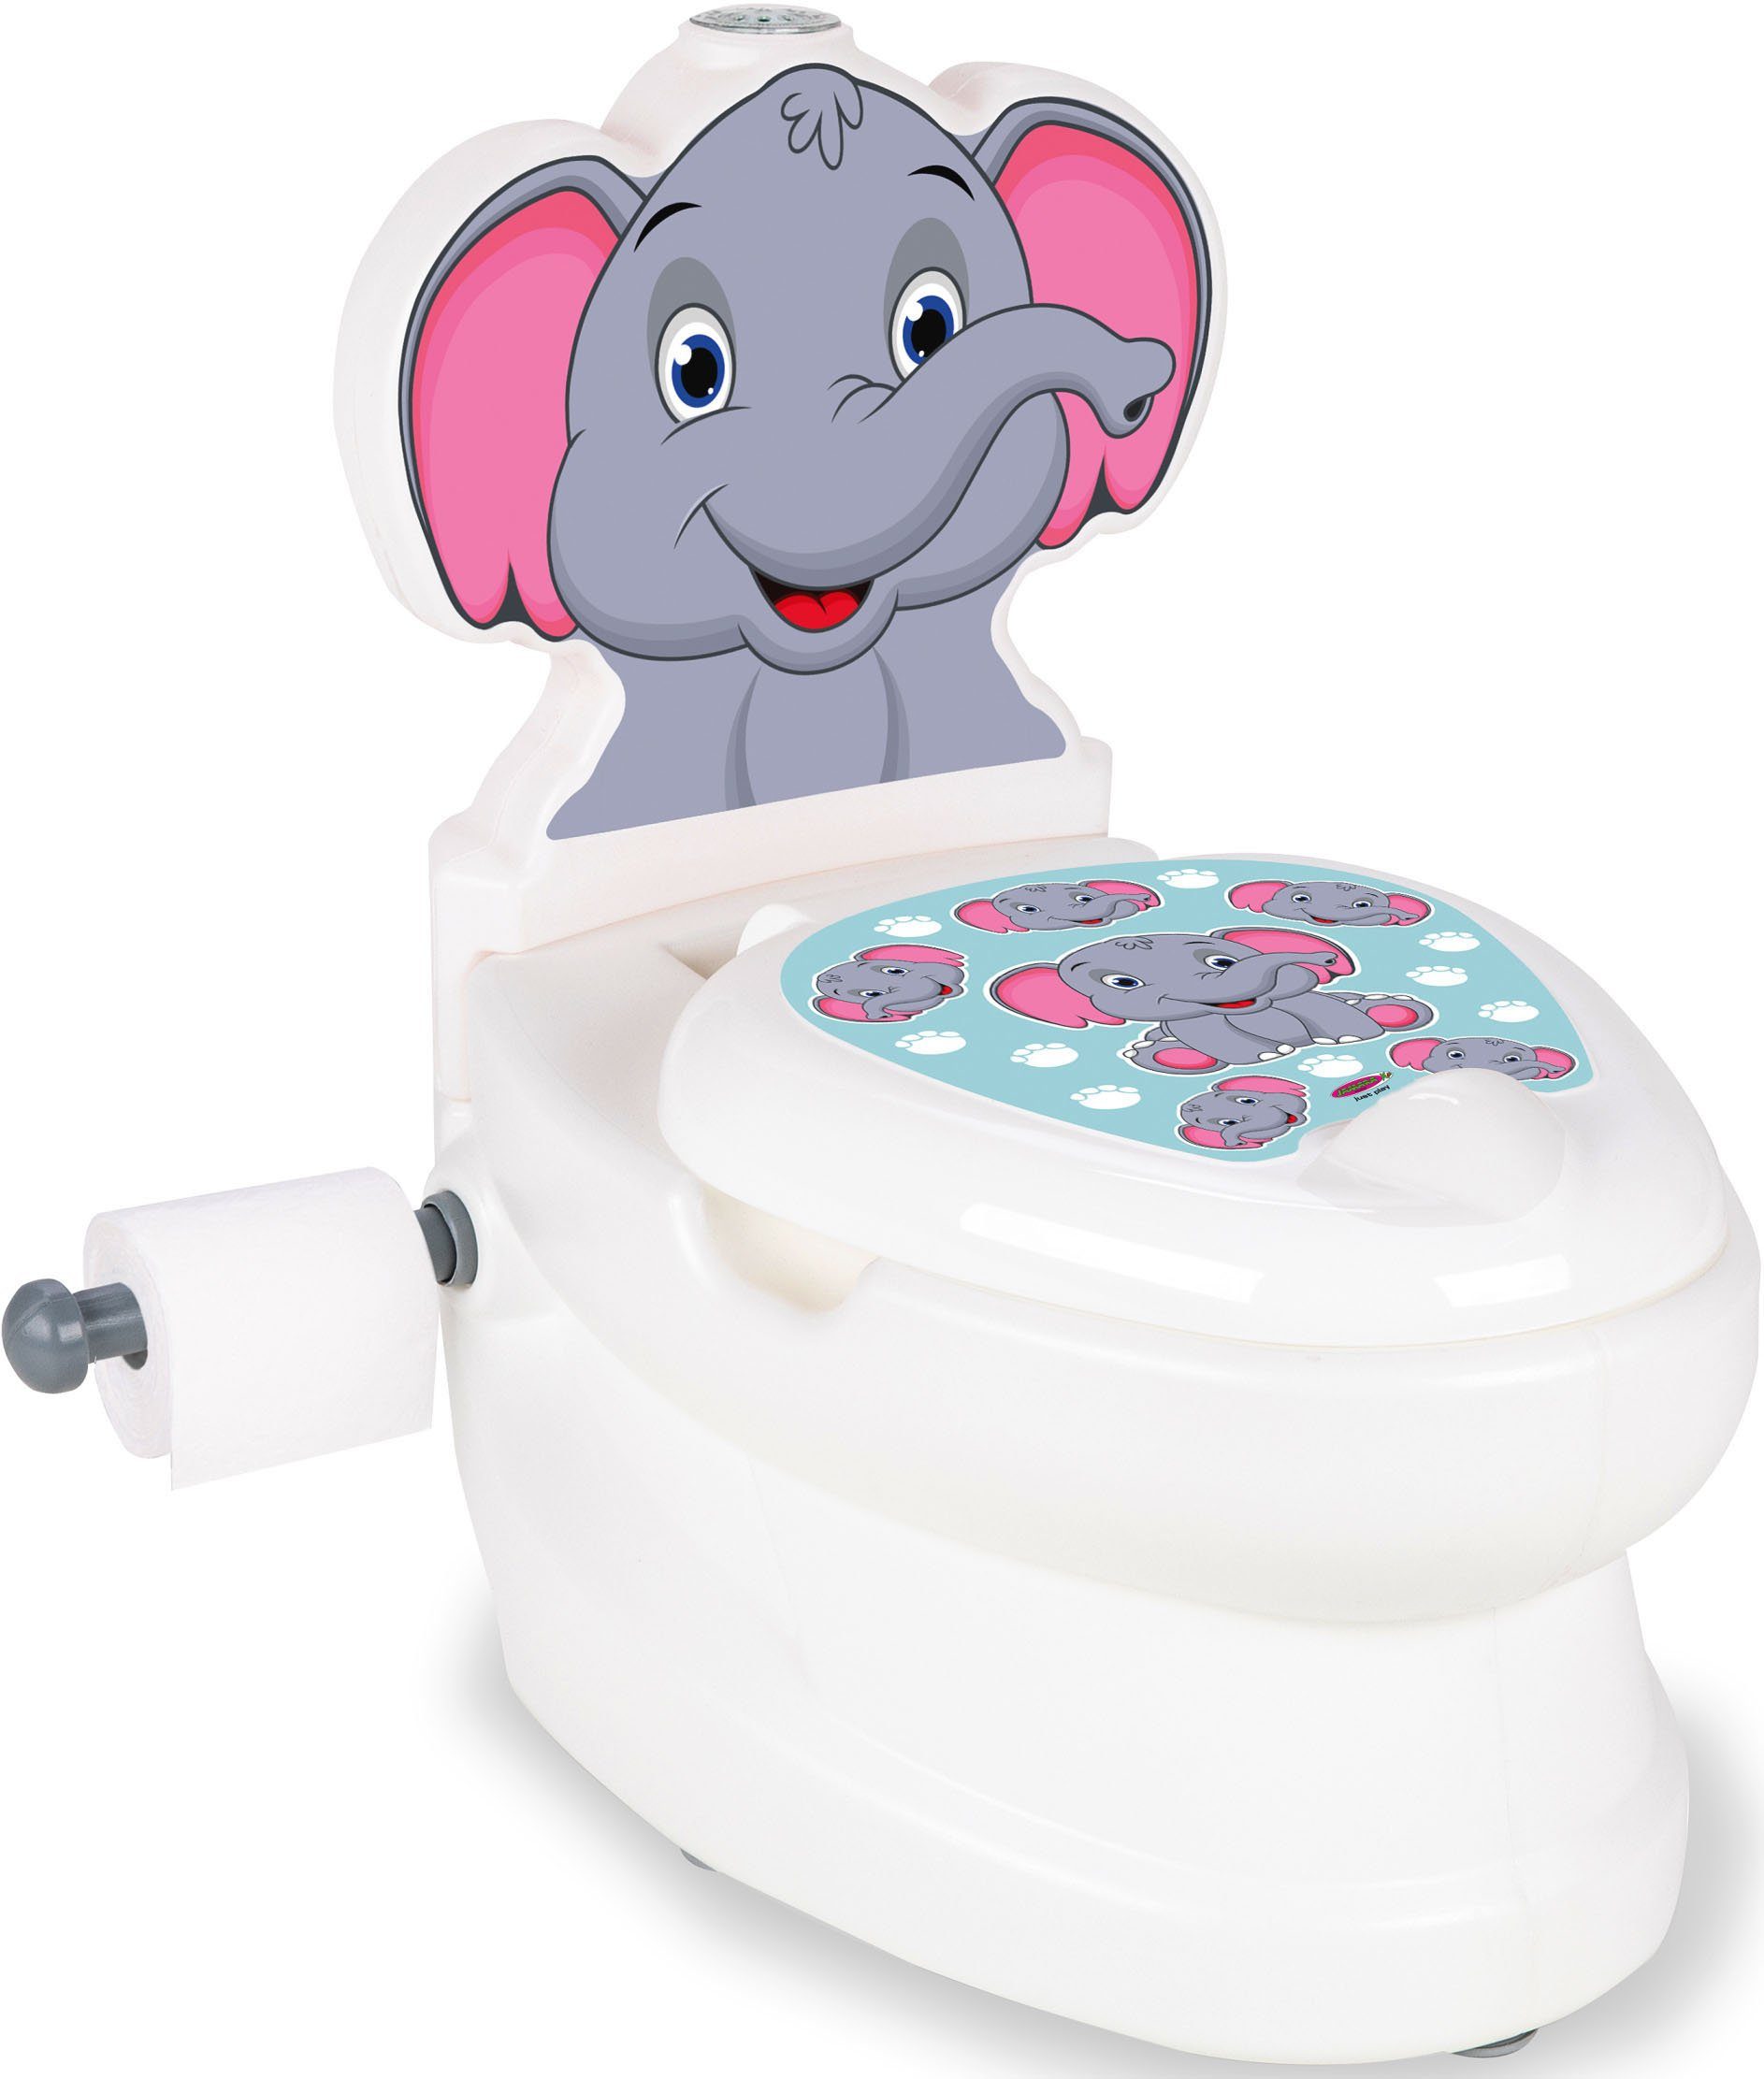 Jamara Toilettentrainer Meine kleine Toilette, Elefant, mit Spülsound und Toilettenpapierhalter | Toilettentrainer